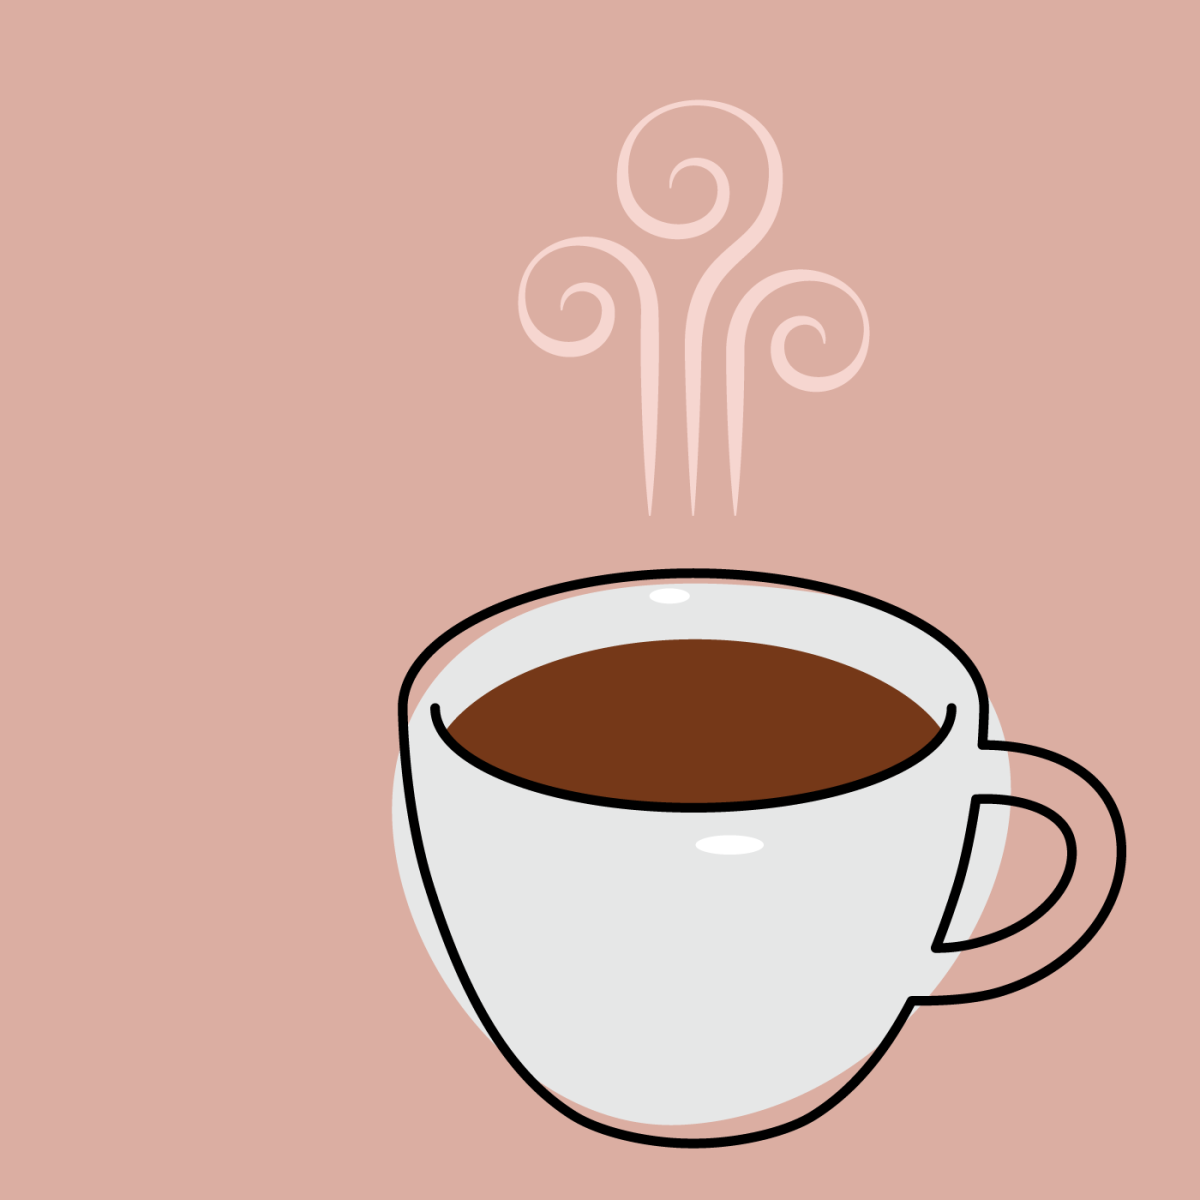 Кофе рисунок. Кофе иллюстратор. Рисуем кофе. Кружка с кофе в иллюстраторе.